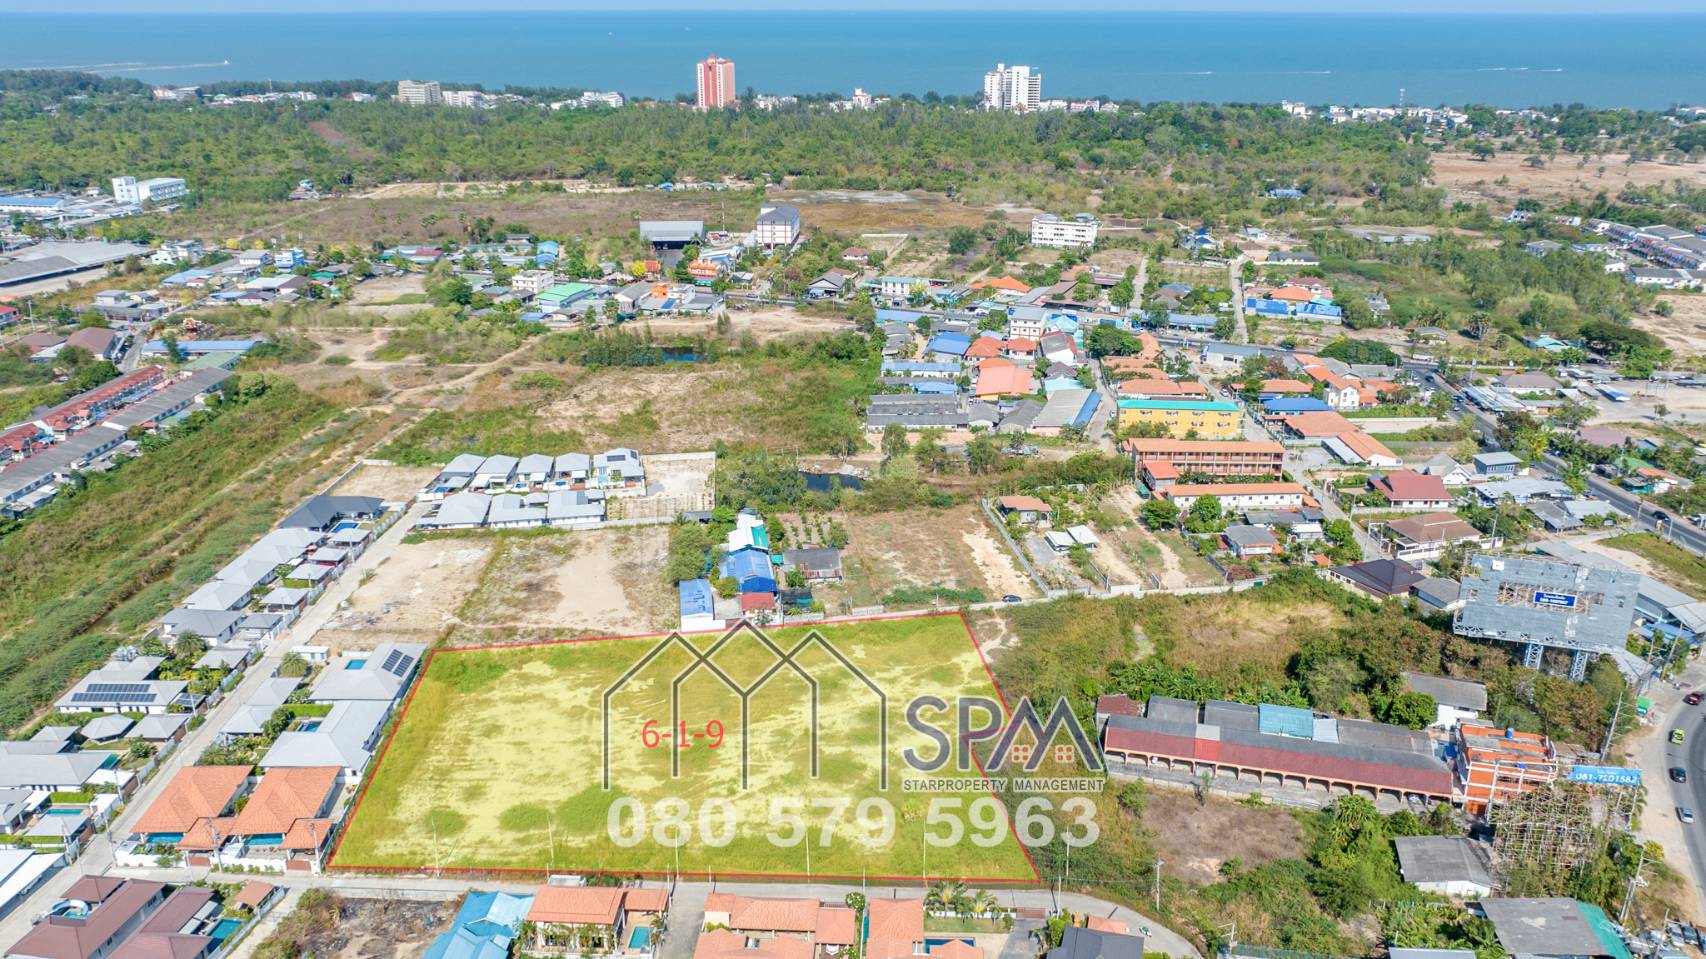 Land for sale at Cha Am town, 7 Rai 65 sqwah (11460 sq.m,) price 3.9 Million Baht per Rai